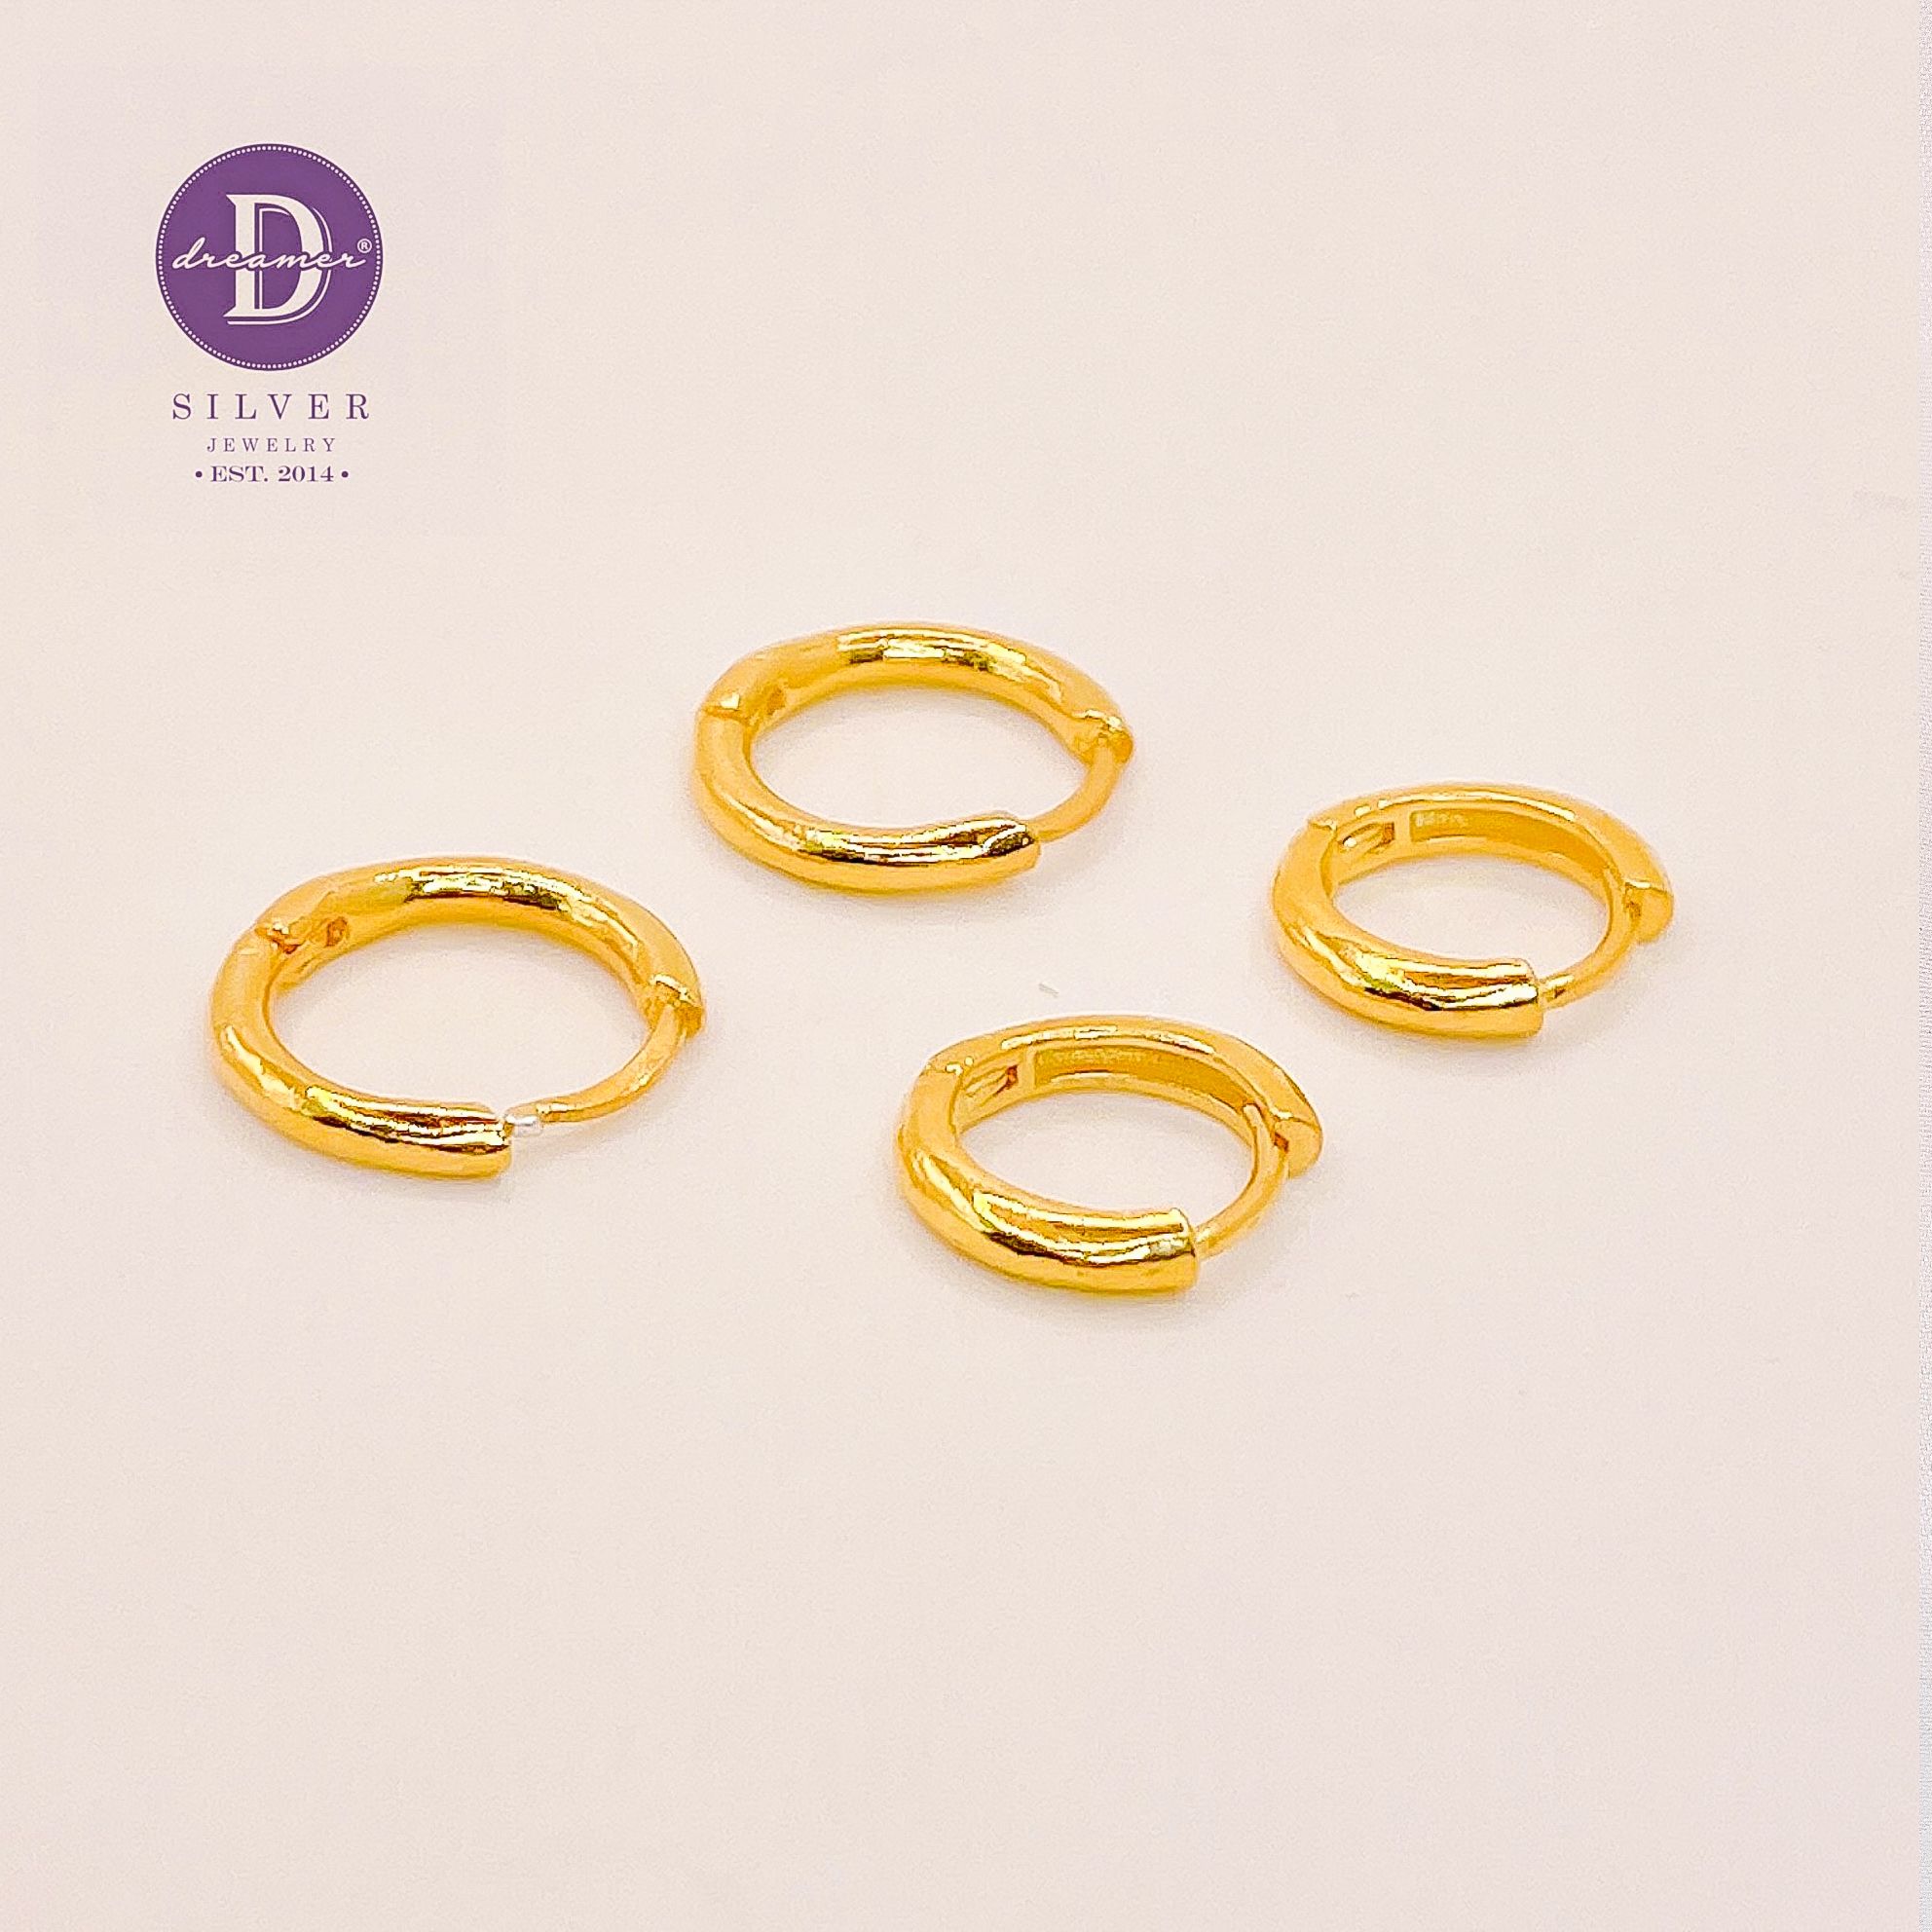  Essential Basic Hoops - Gold Plated Earrings - Khoen Tròn Hoop - Chỉ Tròn 2li (10mm-13mm) - 2996BTK & 2997BTK 